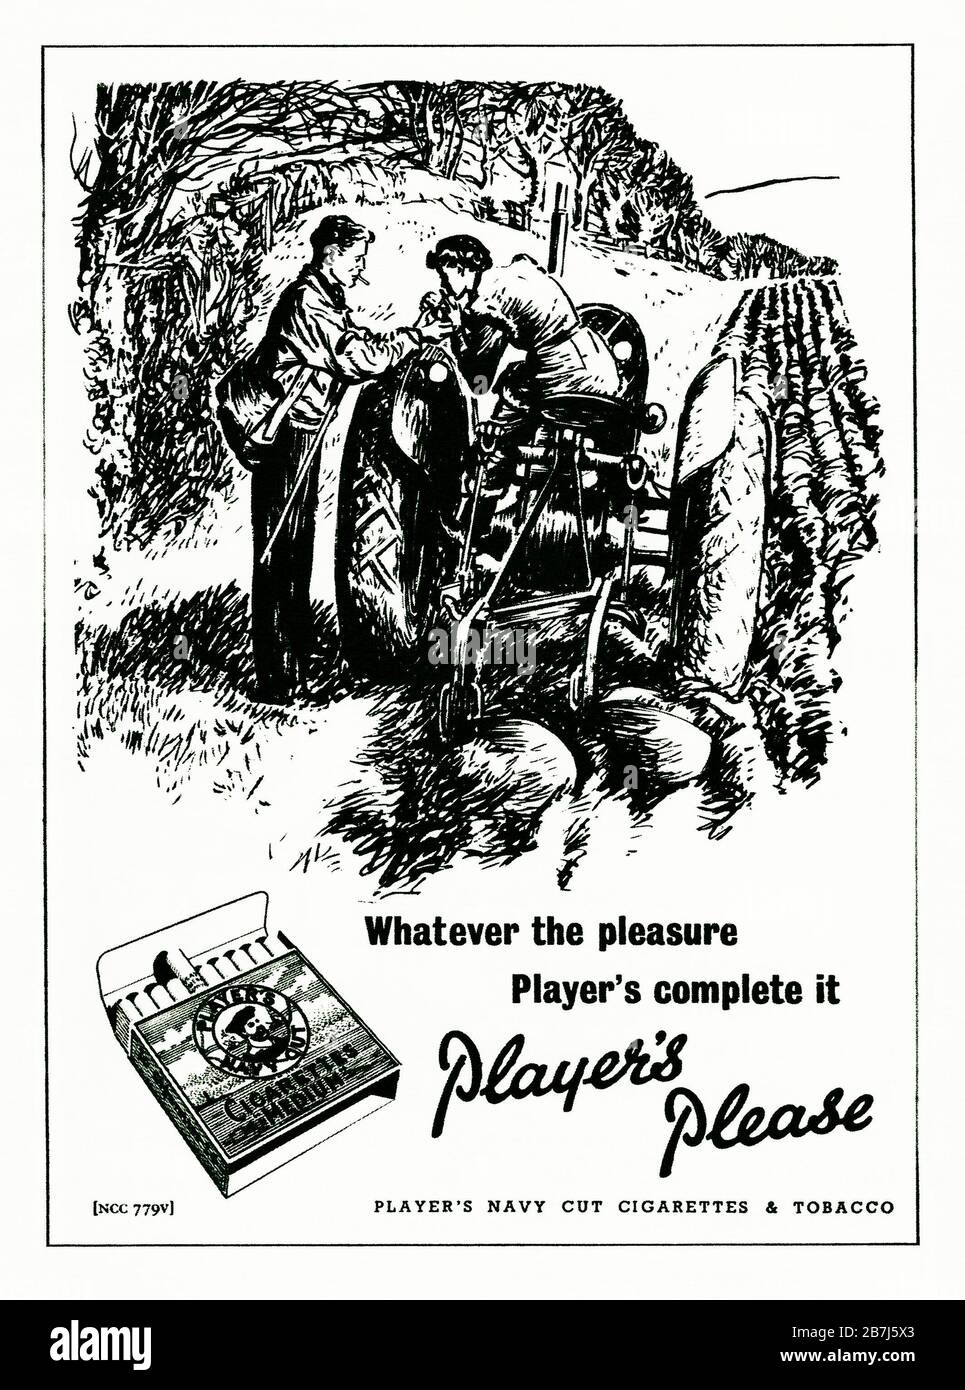 Un annuncio degli anni '50 per le sigarette 'Medio' da taglio Navy del giocatore. L'annuncio è apparso in una rivista pubblicata nel Regno Unito nel febbraio 1952. L'illustrazione presenta una ragazza su un trattore e le parole enfatizzano il piacere di fumare e la famosa frase "Player's Please". La scatola delle sigarette presentava la famosa immagine marinara al centro del disegno - con la parola 'Hero' sul suo cappello. John Player e i figli di Nottingham entrarono a far parte di Imperial Tobacco nel 1901. Foto Stock